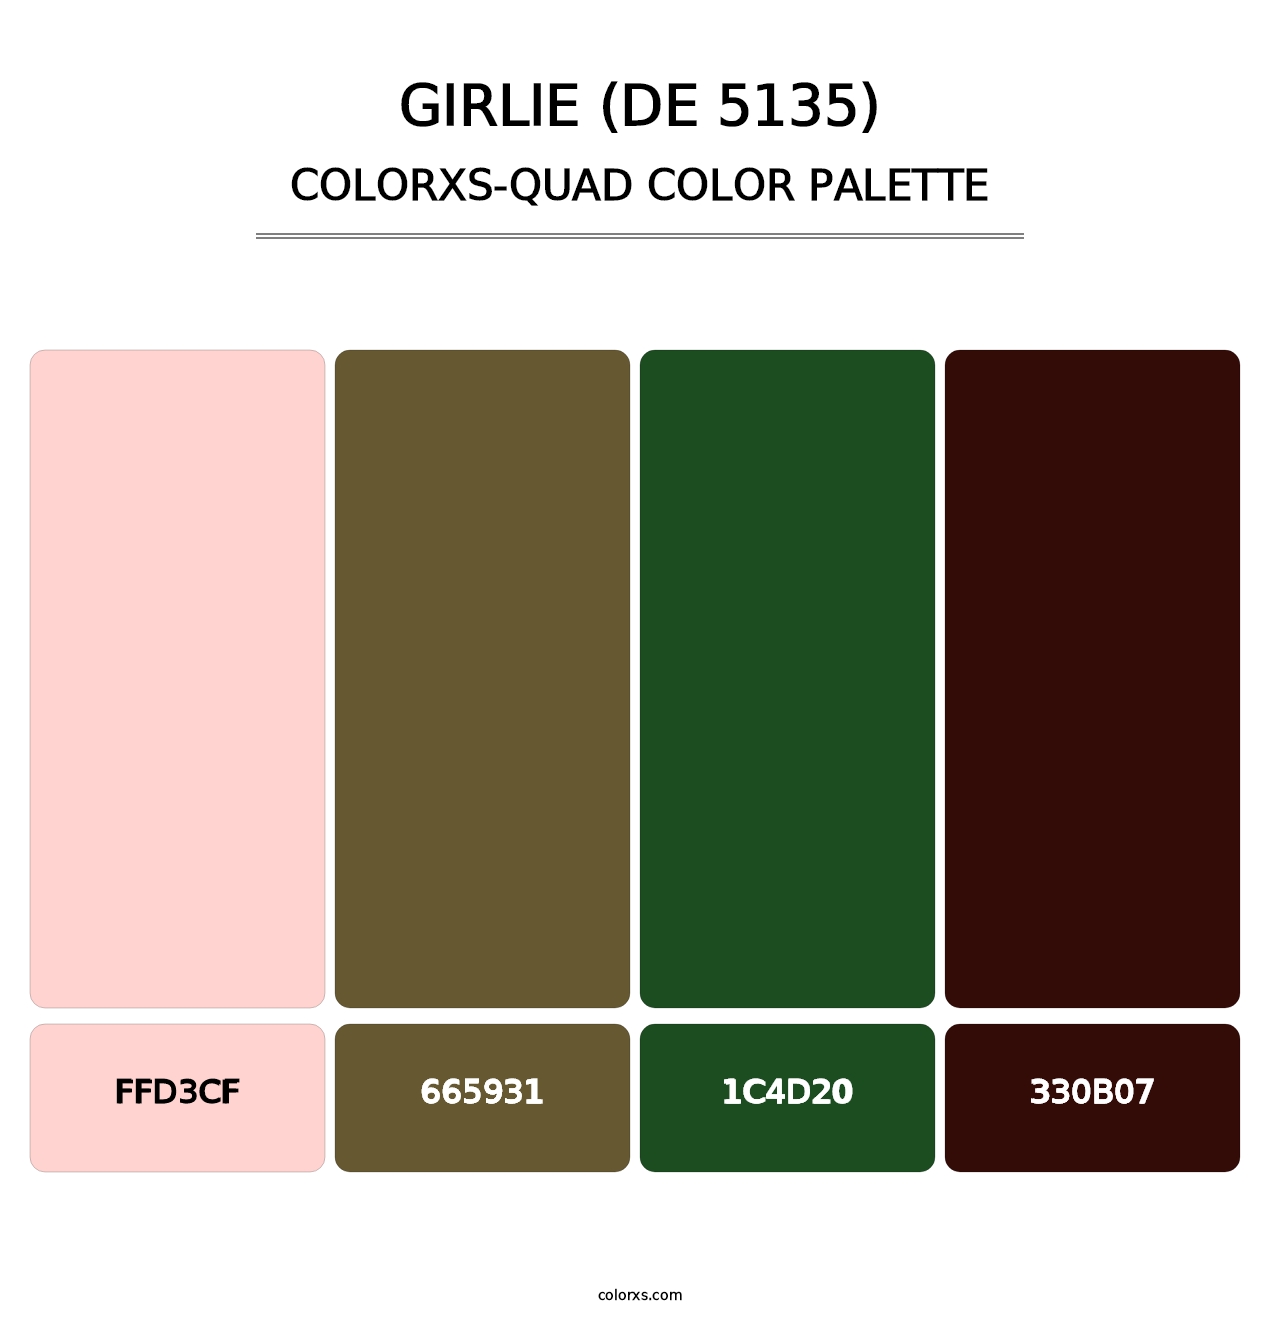 Girlie (DE 5135) - Colorxs Quad Palette